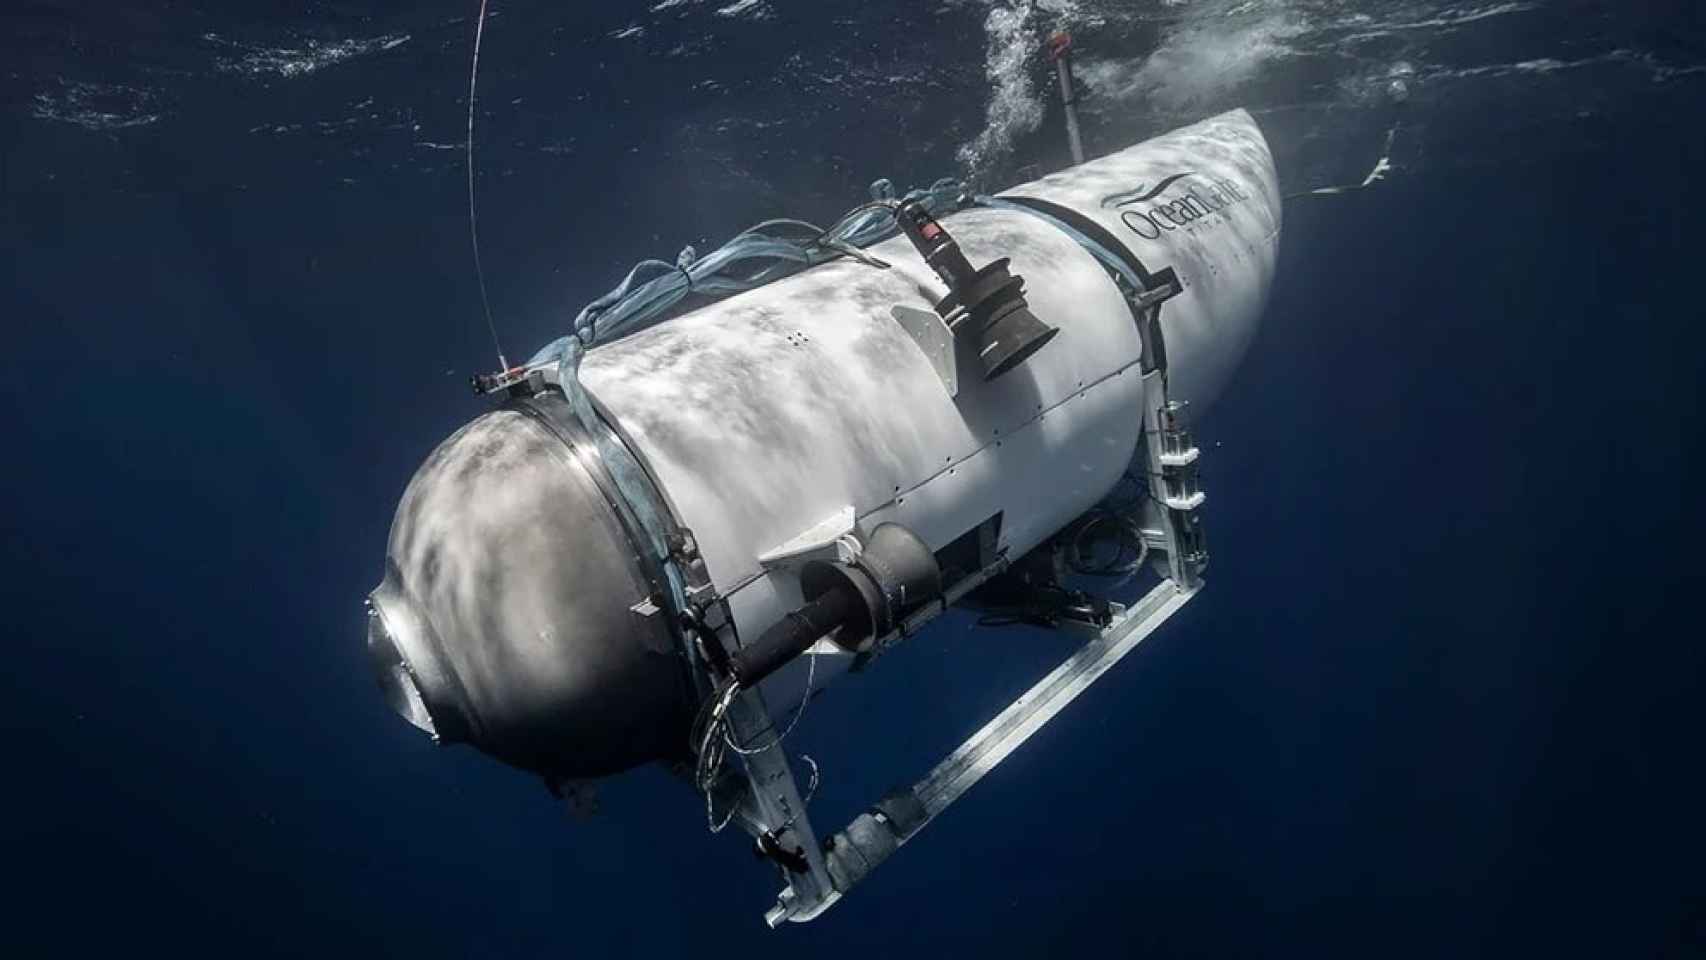 la verdadera razón por la que implosionó el titan: así falló el submarino según un nuevo estudio